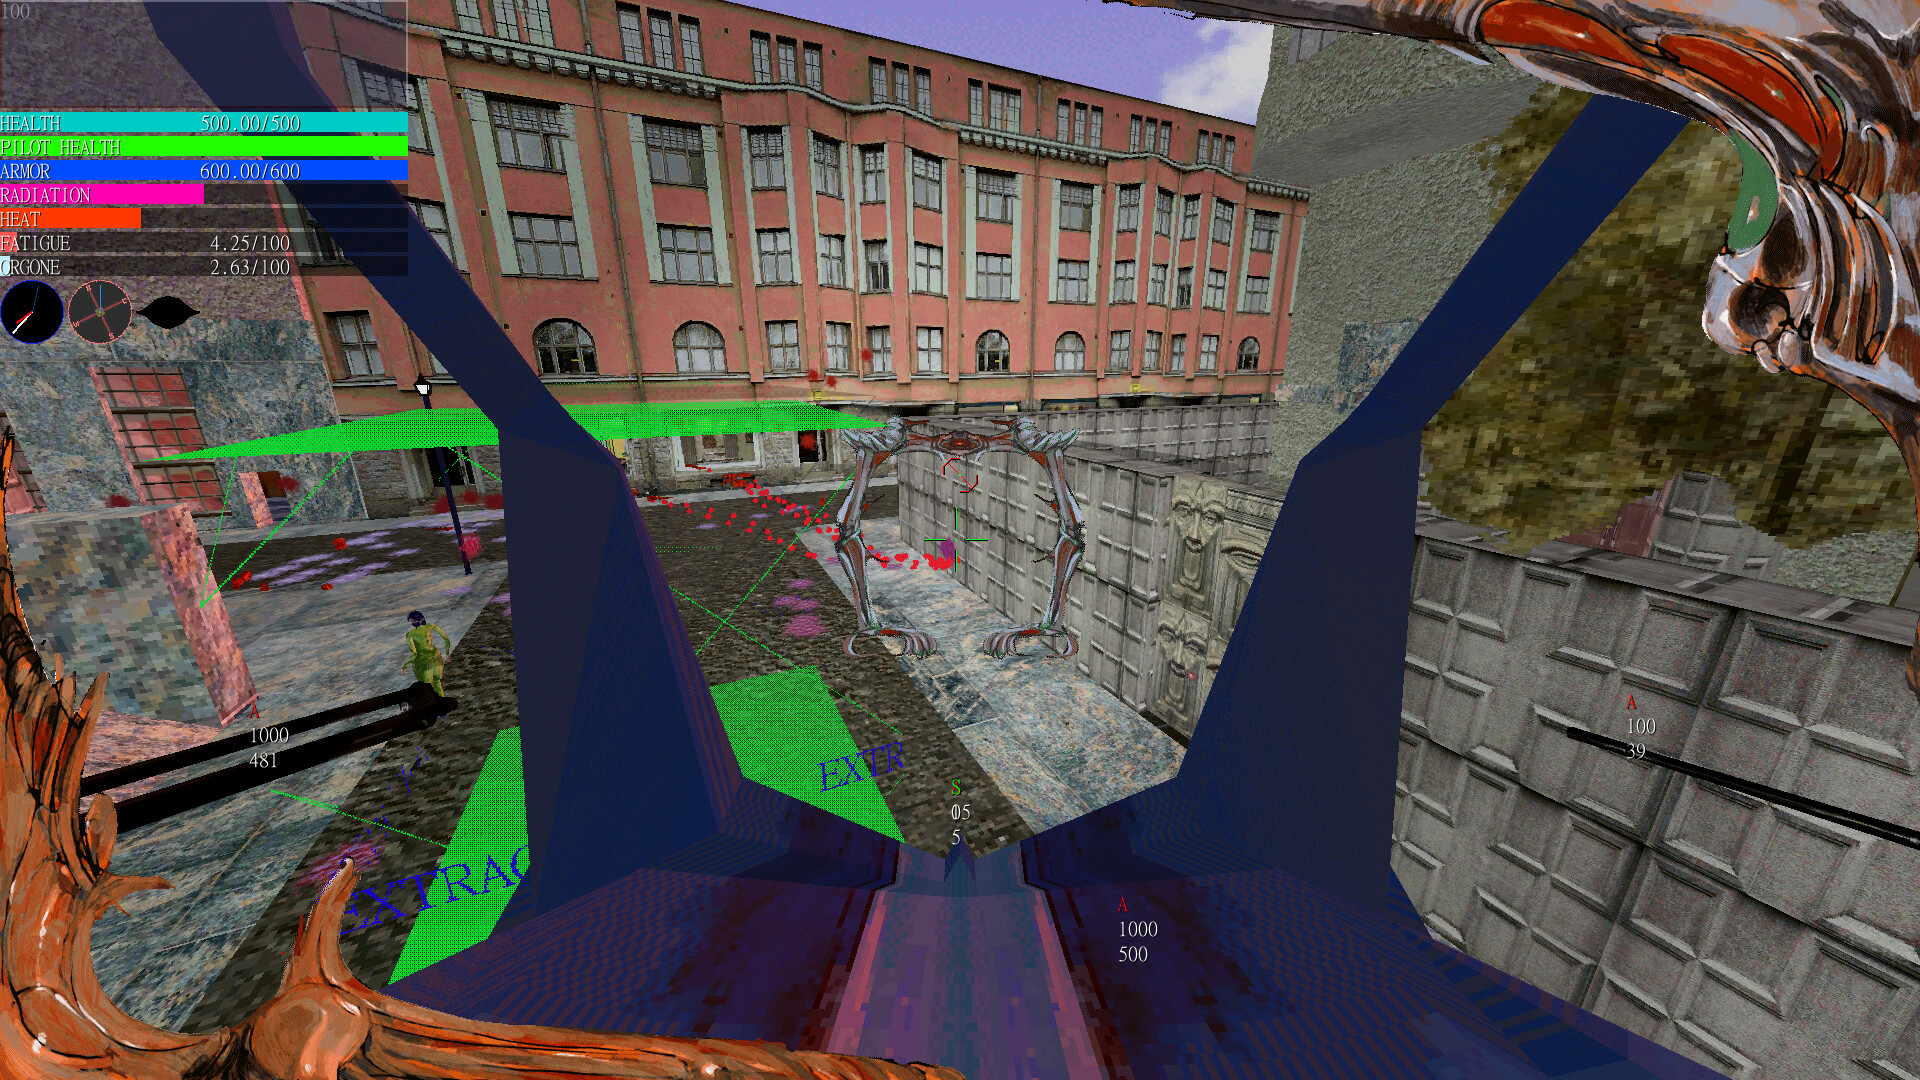 In der Entwicklung befindlicher Screenshot des Spiels Psycho Patrol R. Es handelt sich um einen Low-Poly-Grafikstil mit geringer Wiedergabetreue und bewusst gegensätzlichen Farben und Schnittstellenelementen.